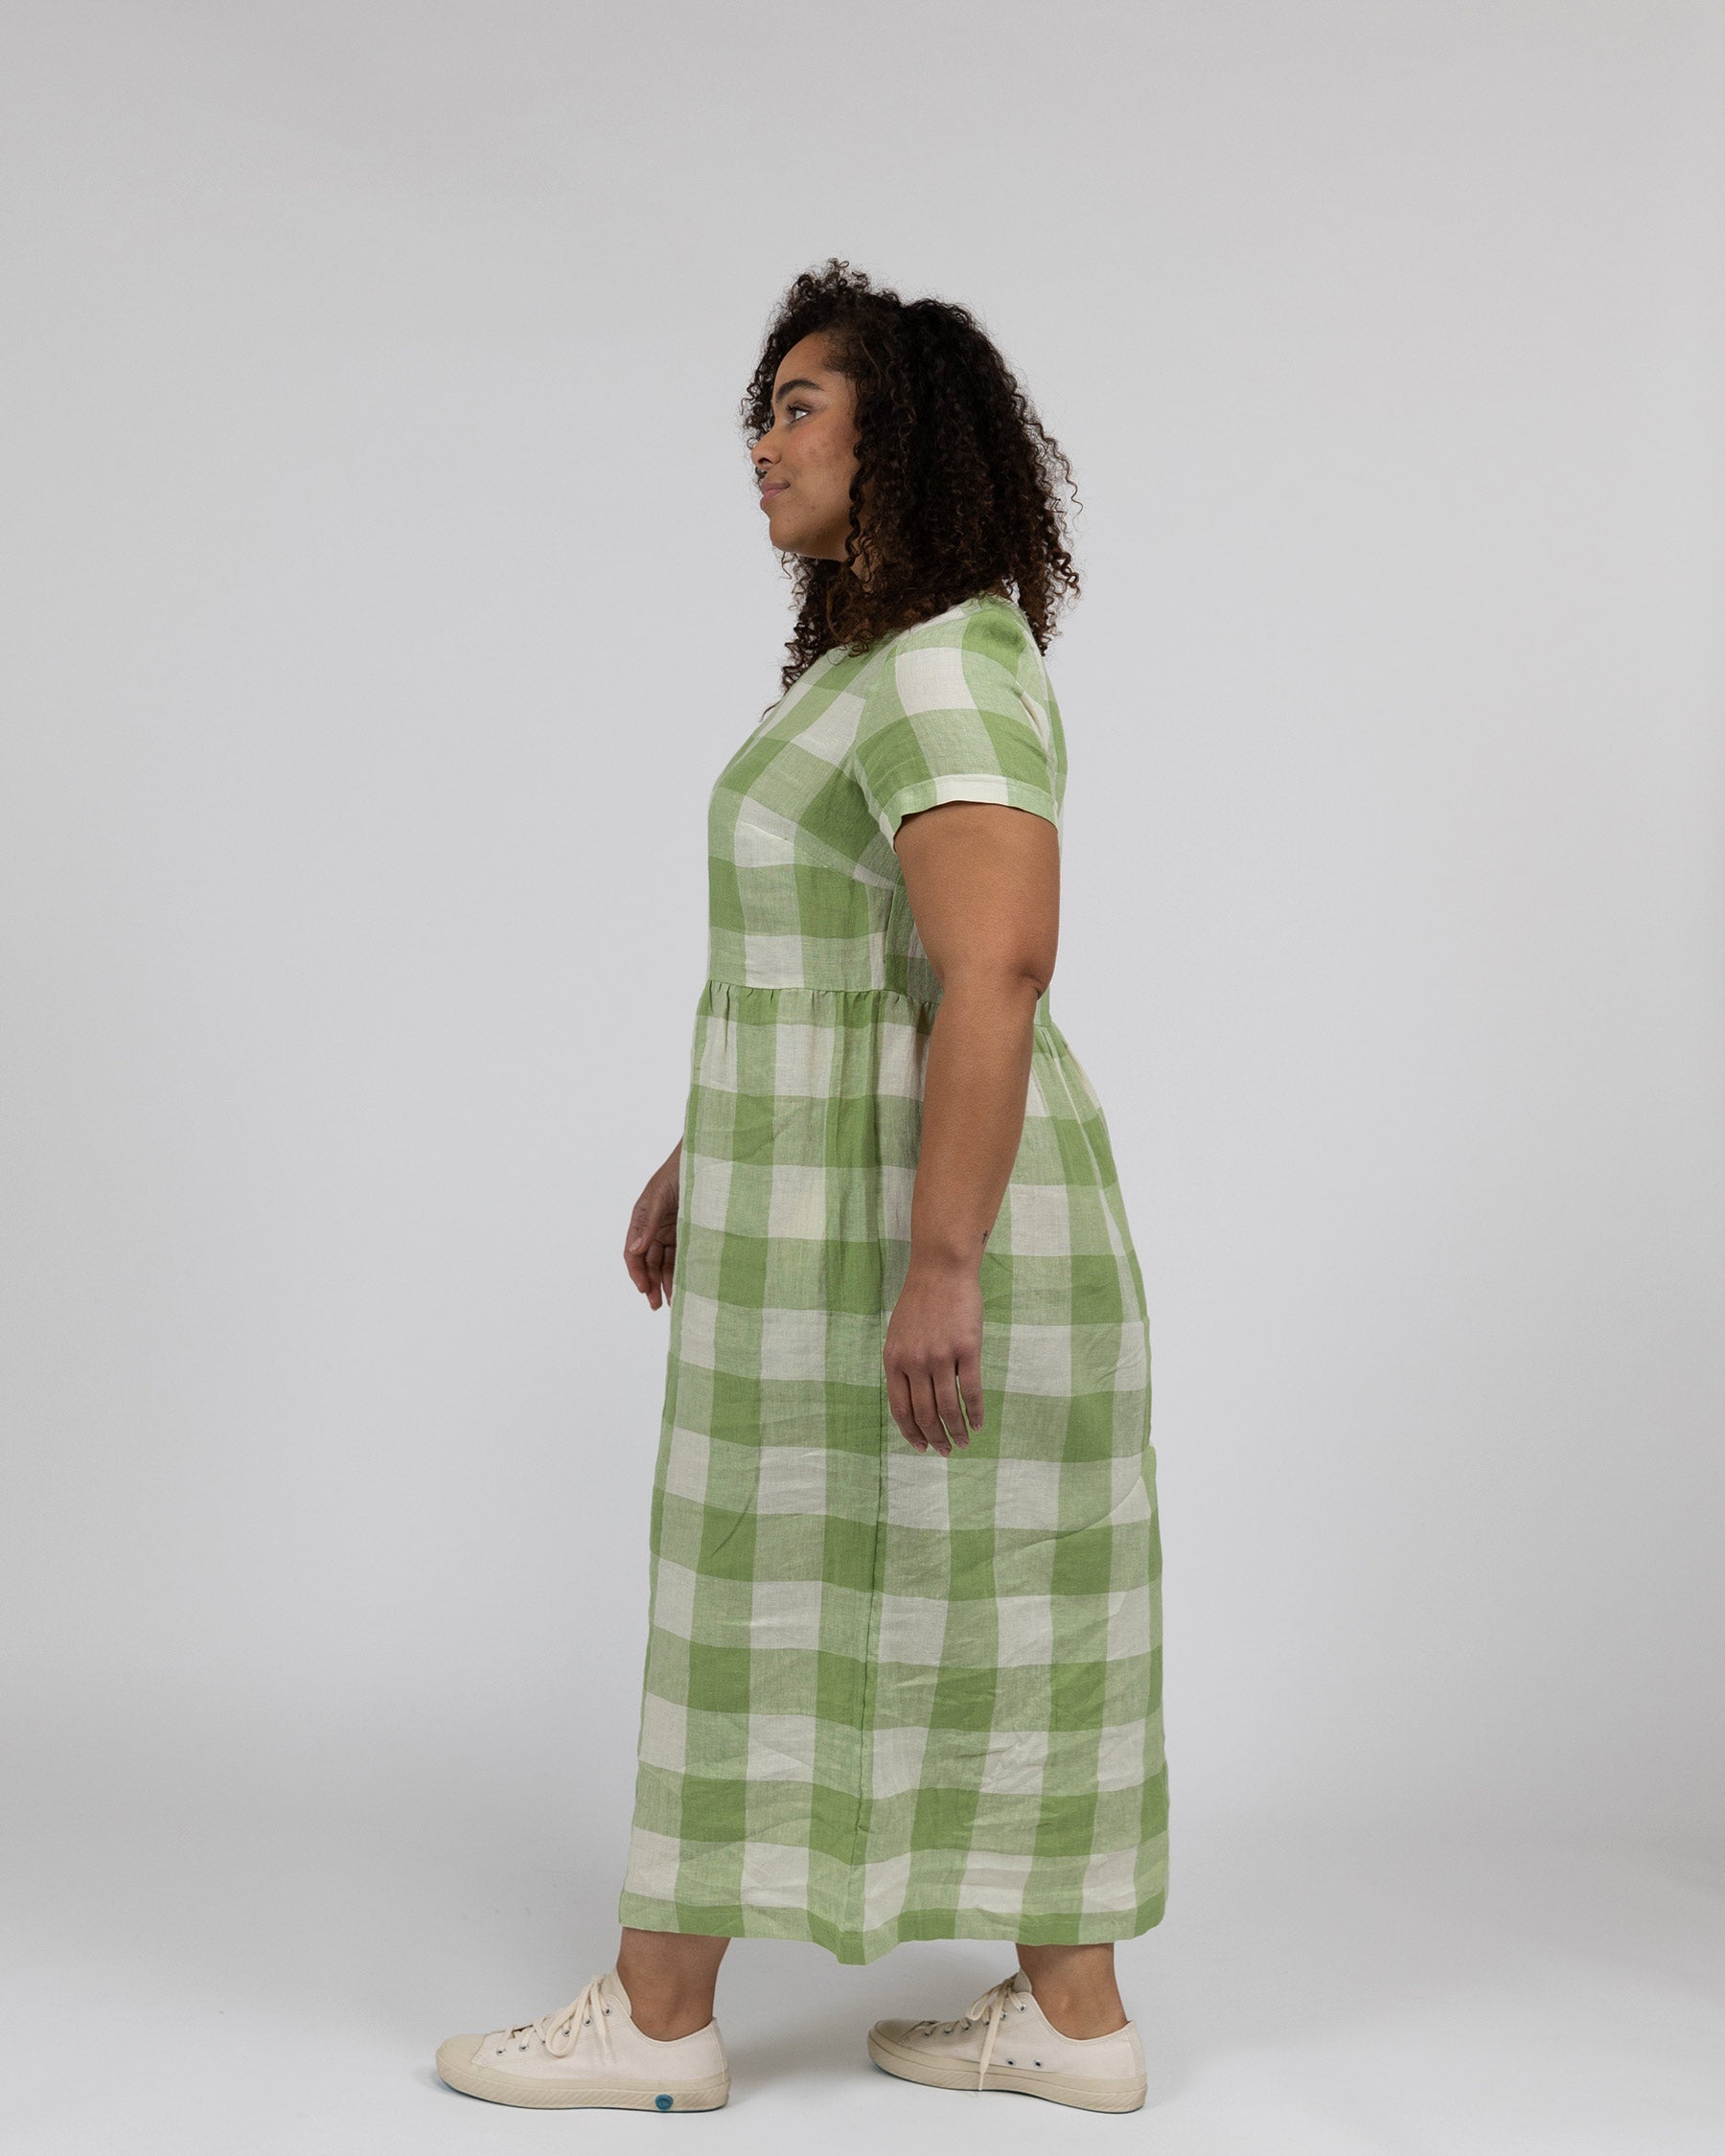 Model No.17 Full Length Linen Tea Dress in Green Apple Check